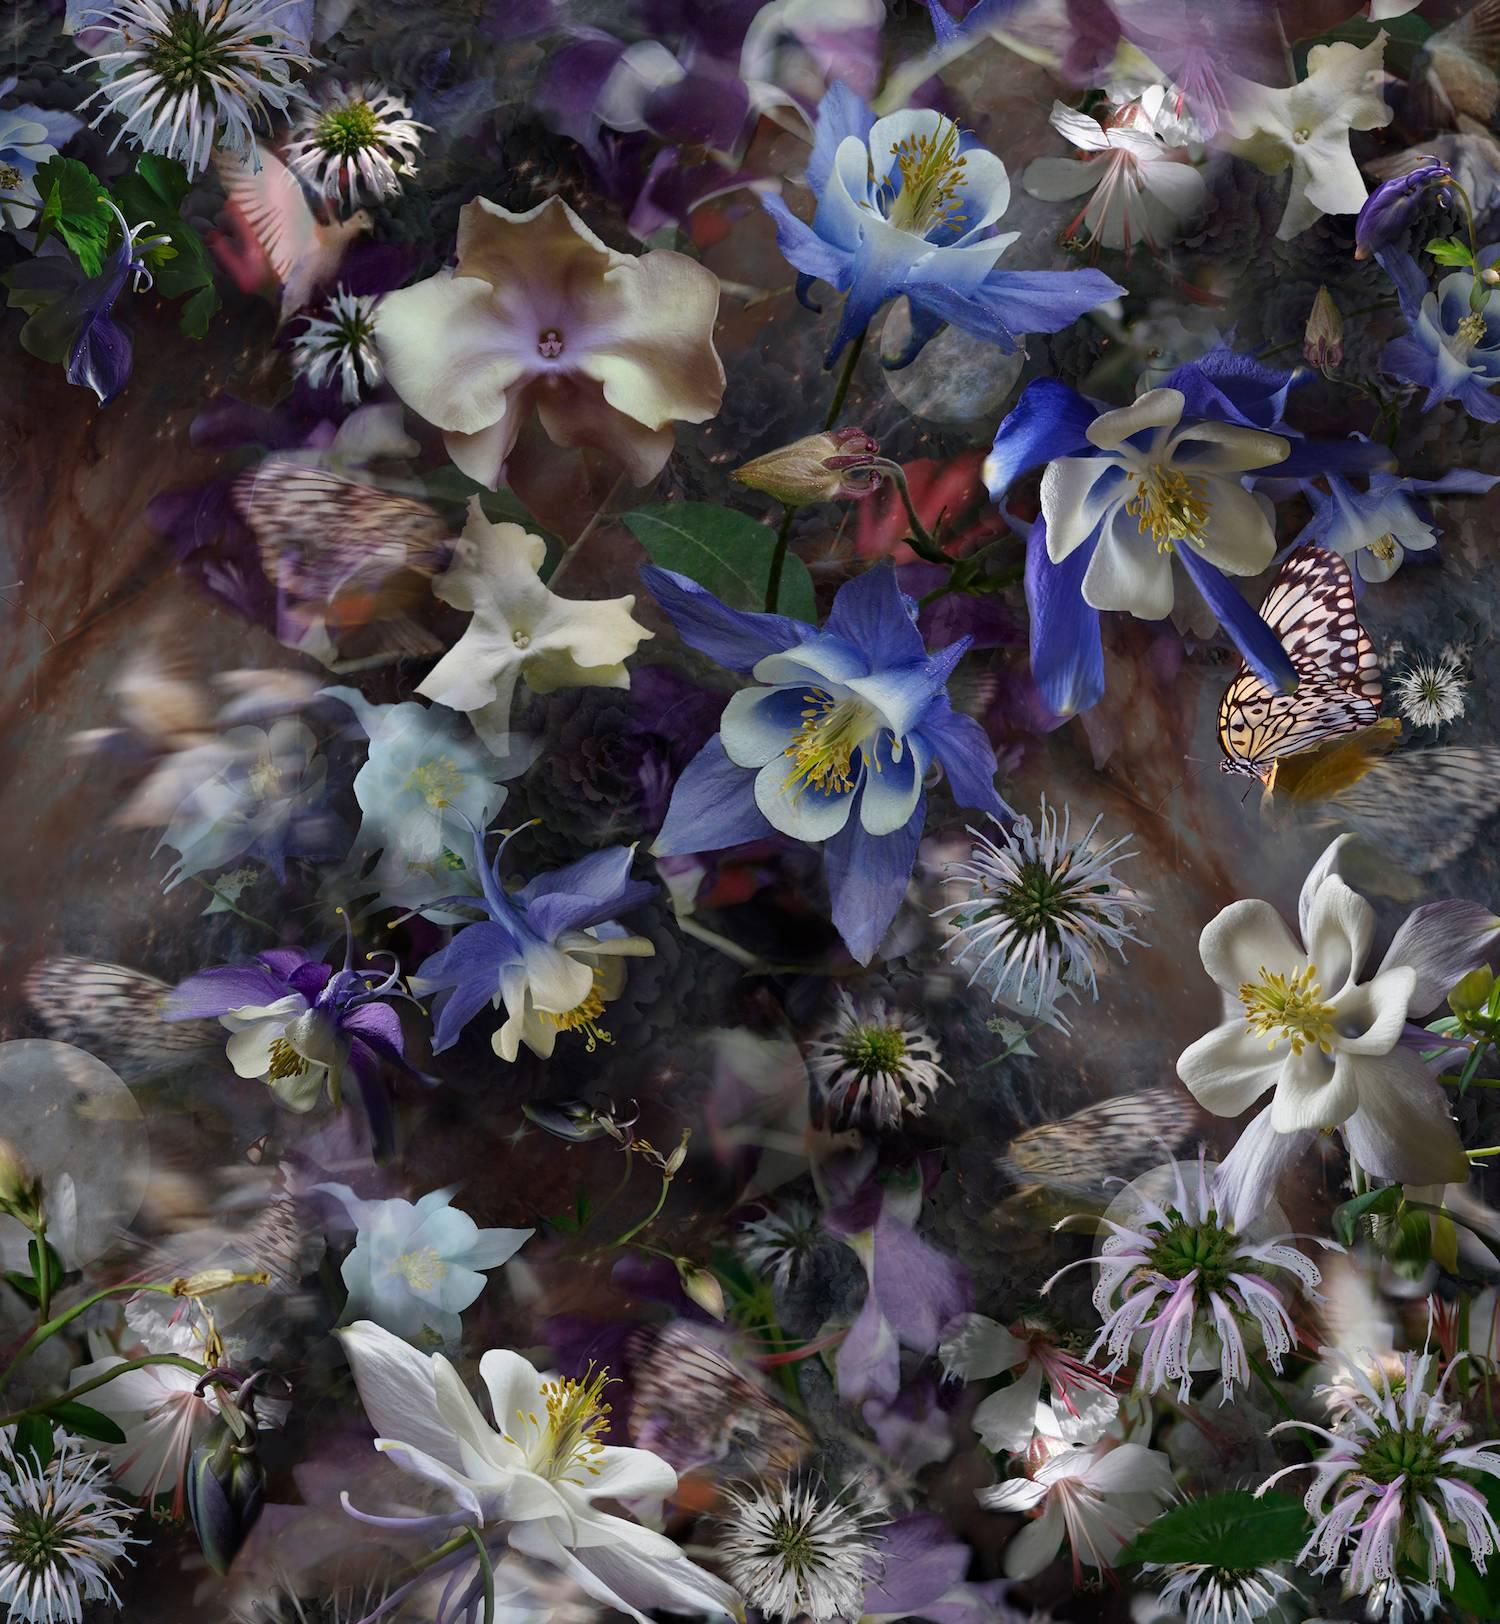 Color Photograph Lisa A. Frank - Columbine : Le mystère des cinq colombes, images superposées de fleurs en bleu violet